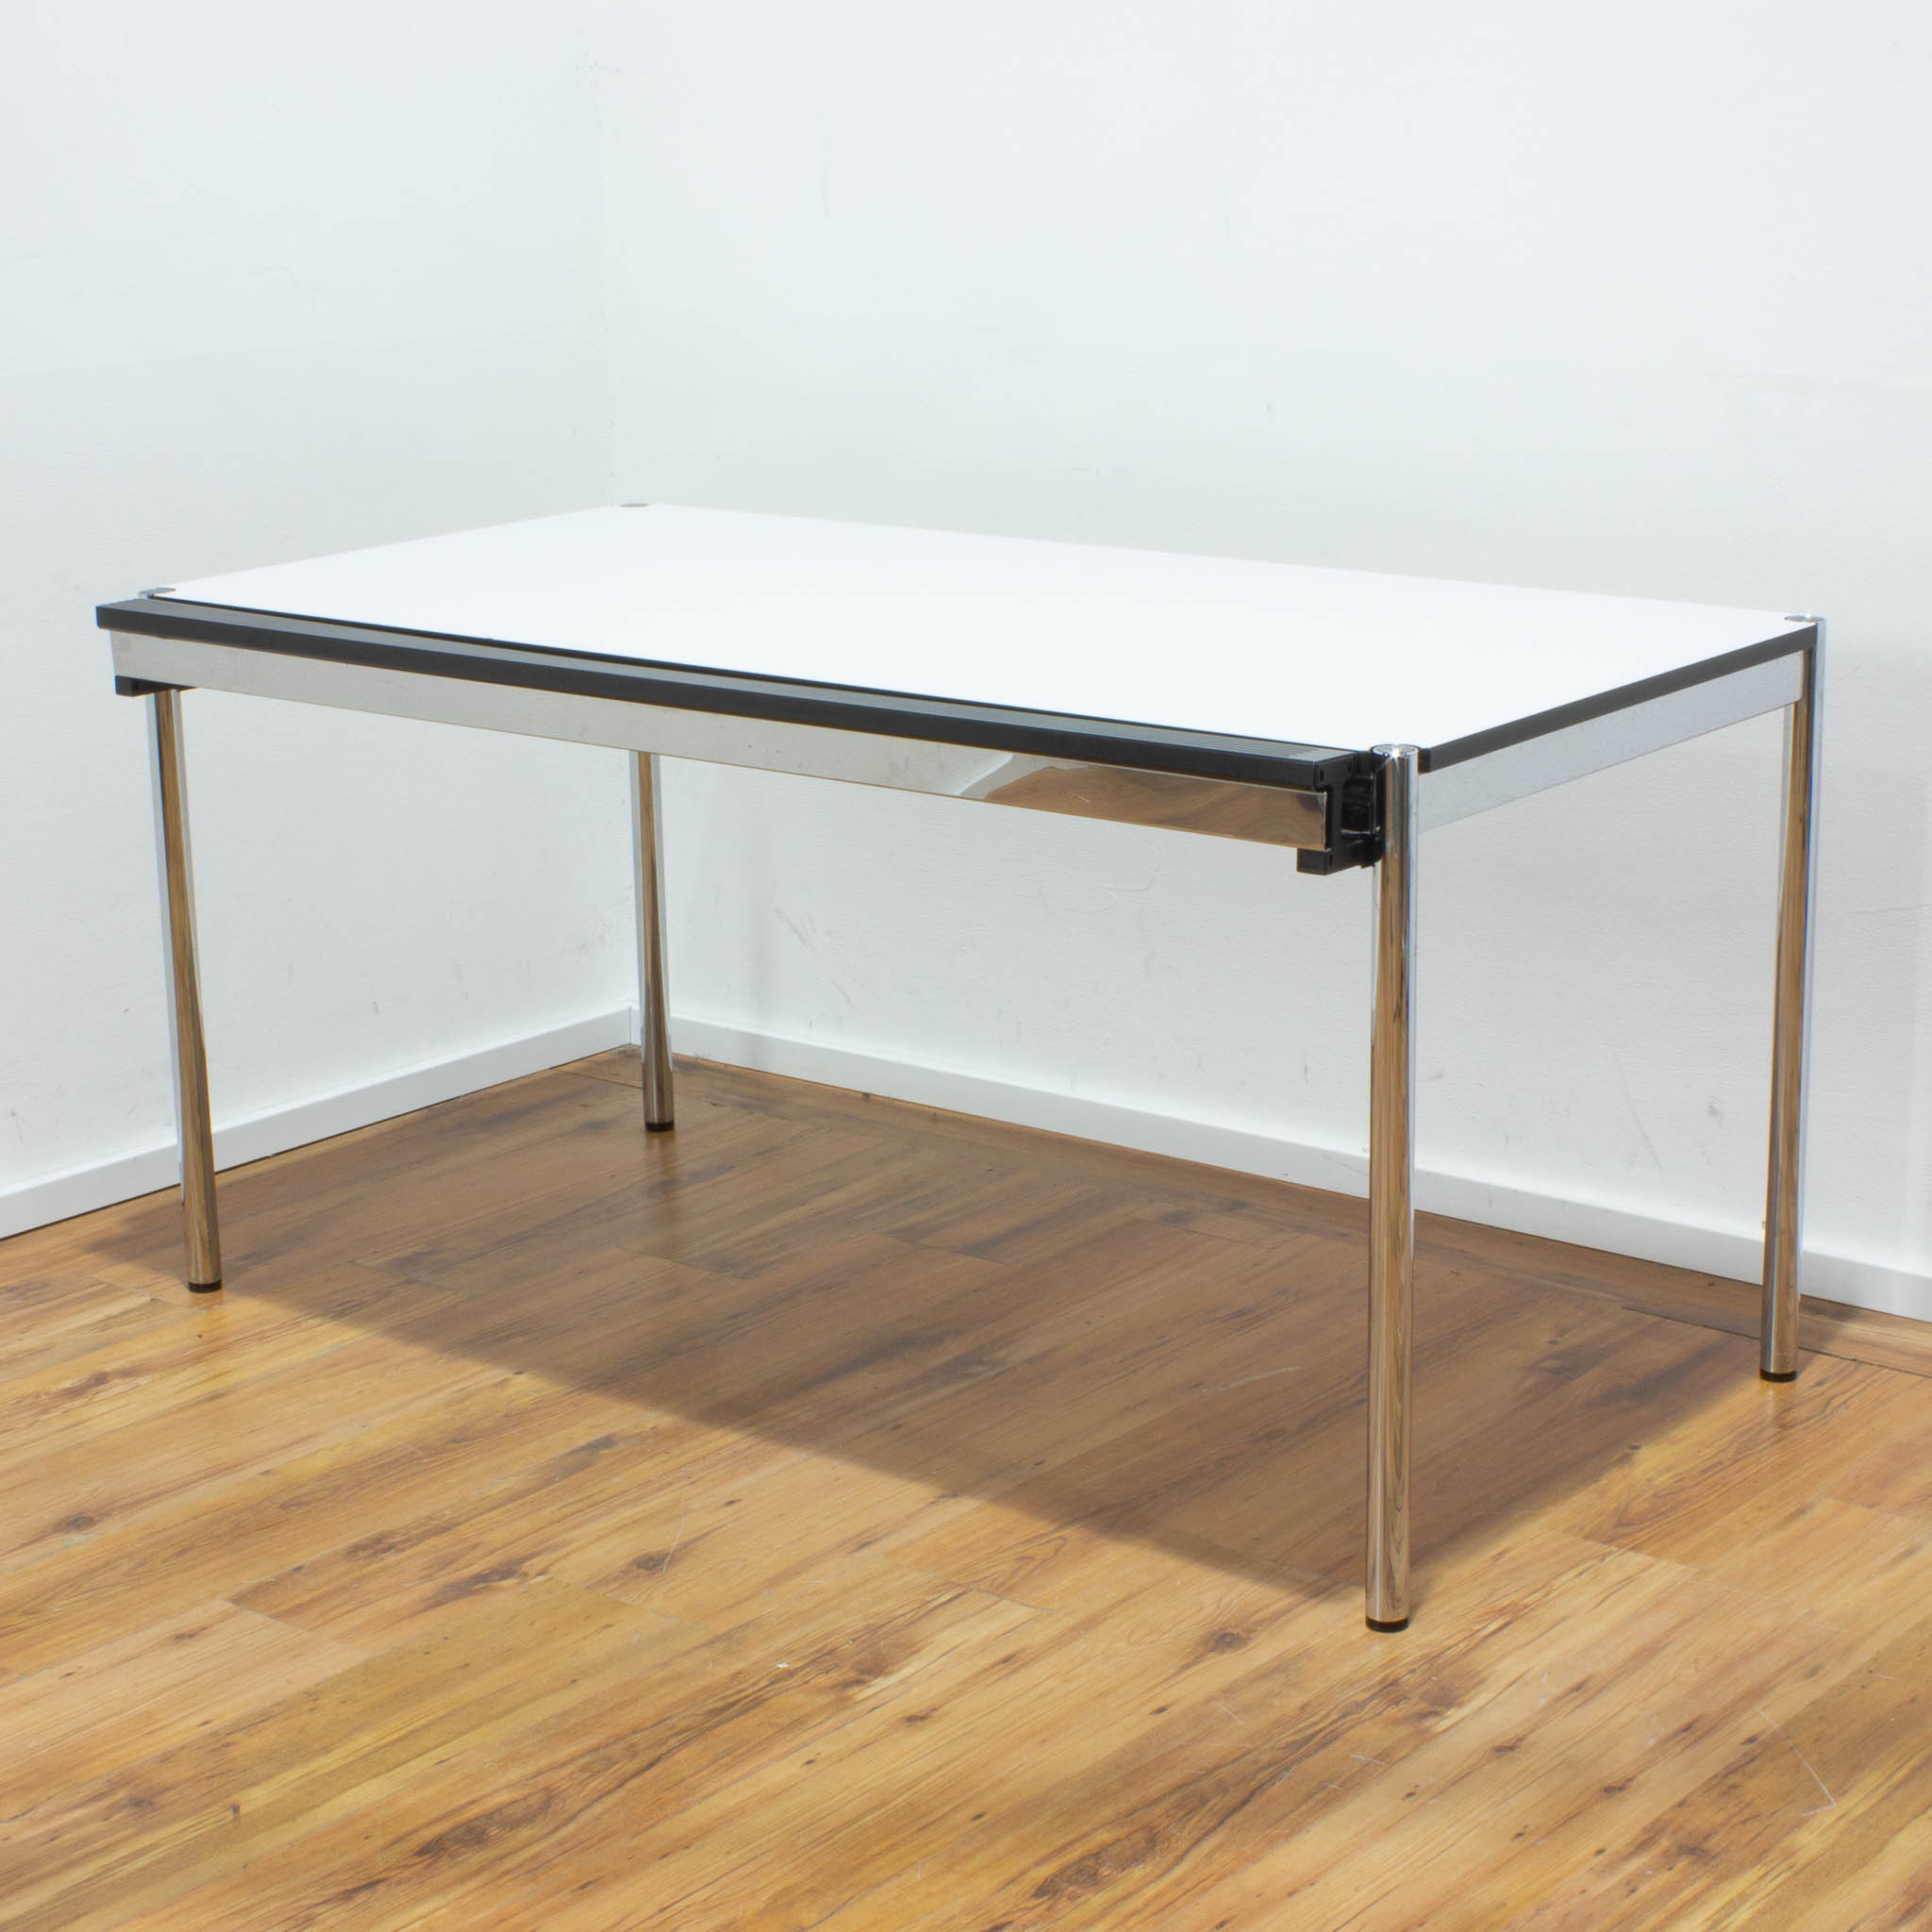  USM Haller Schreibtisch - Tischplatte weiß mit Kabelkanal an der Seite - gebraucht - 150 x 75 cm